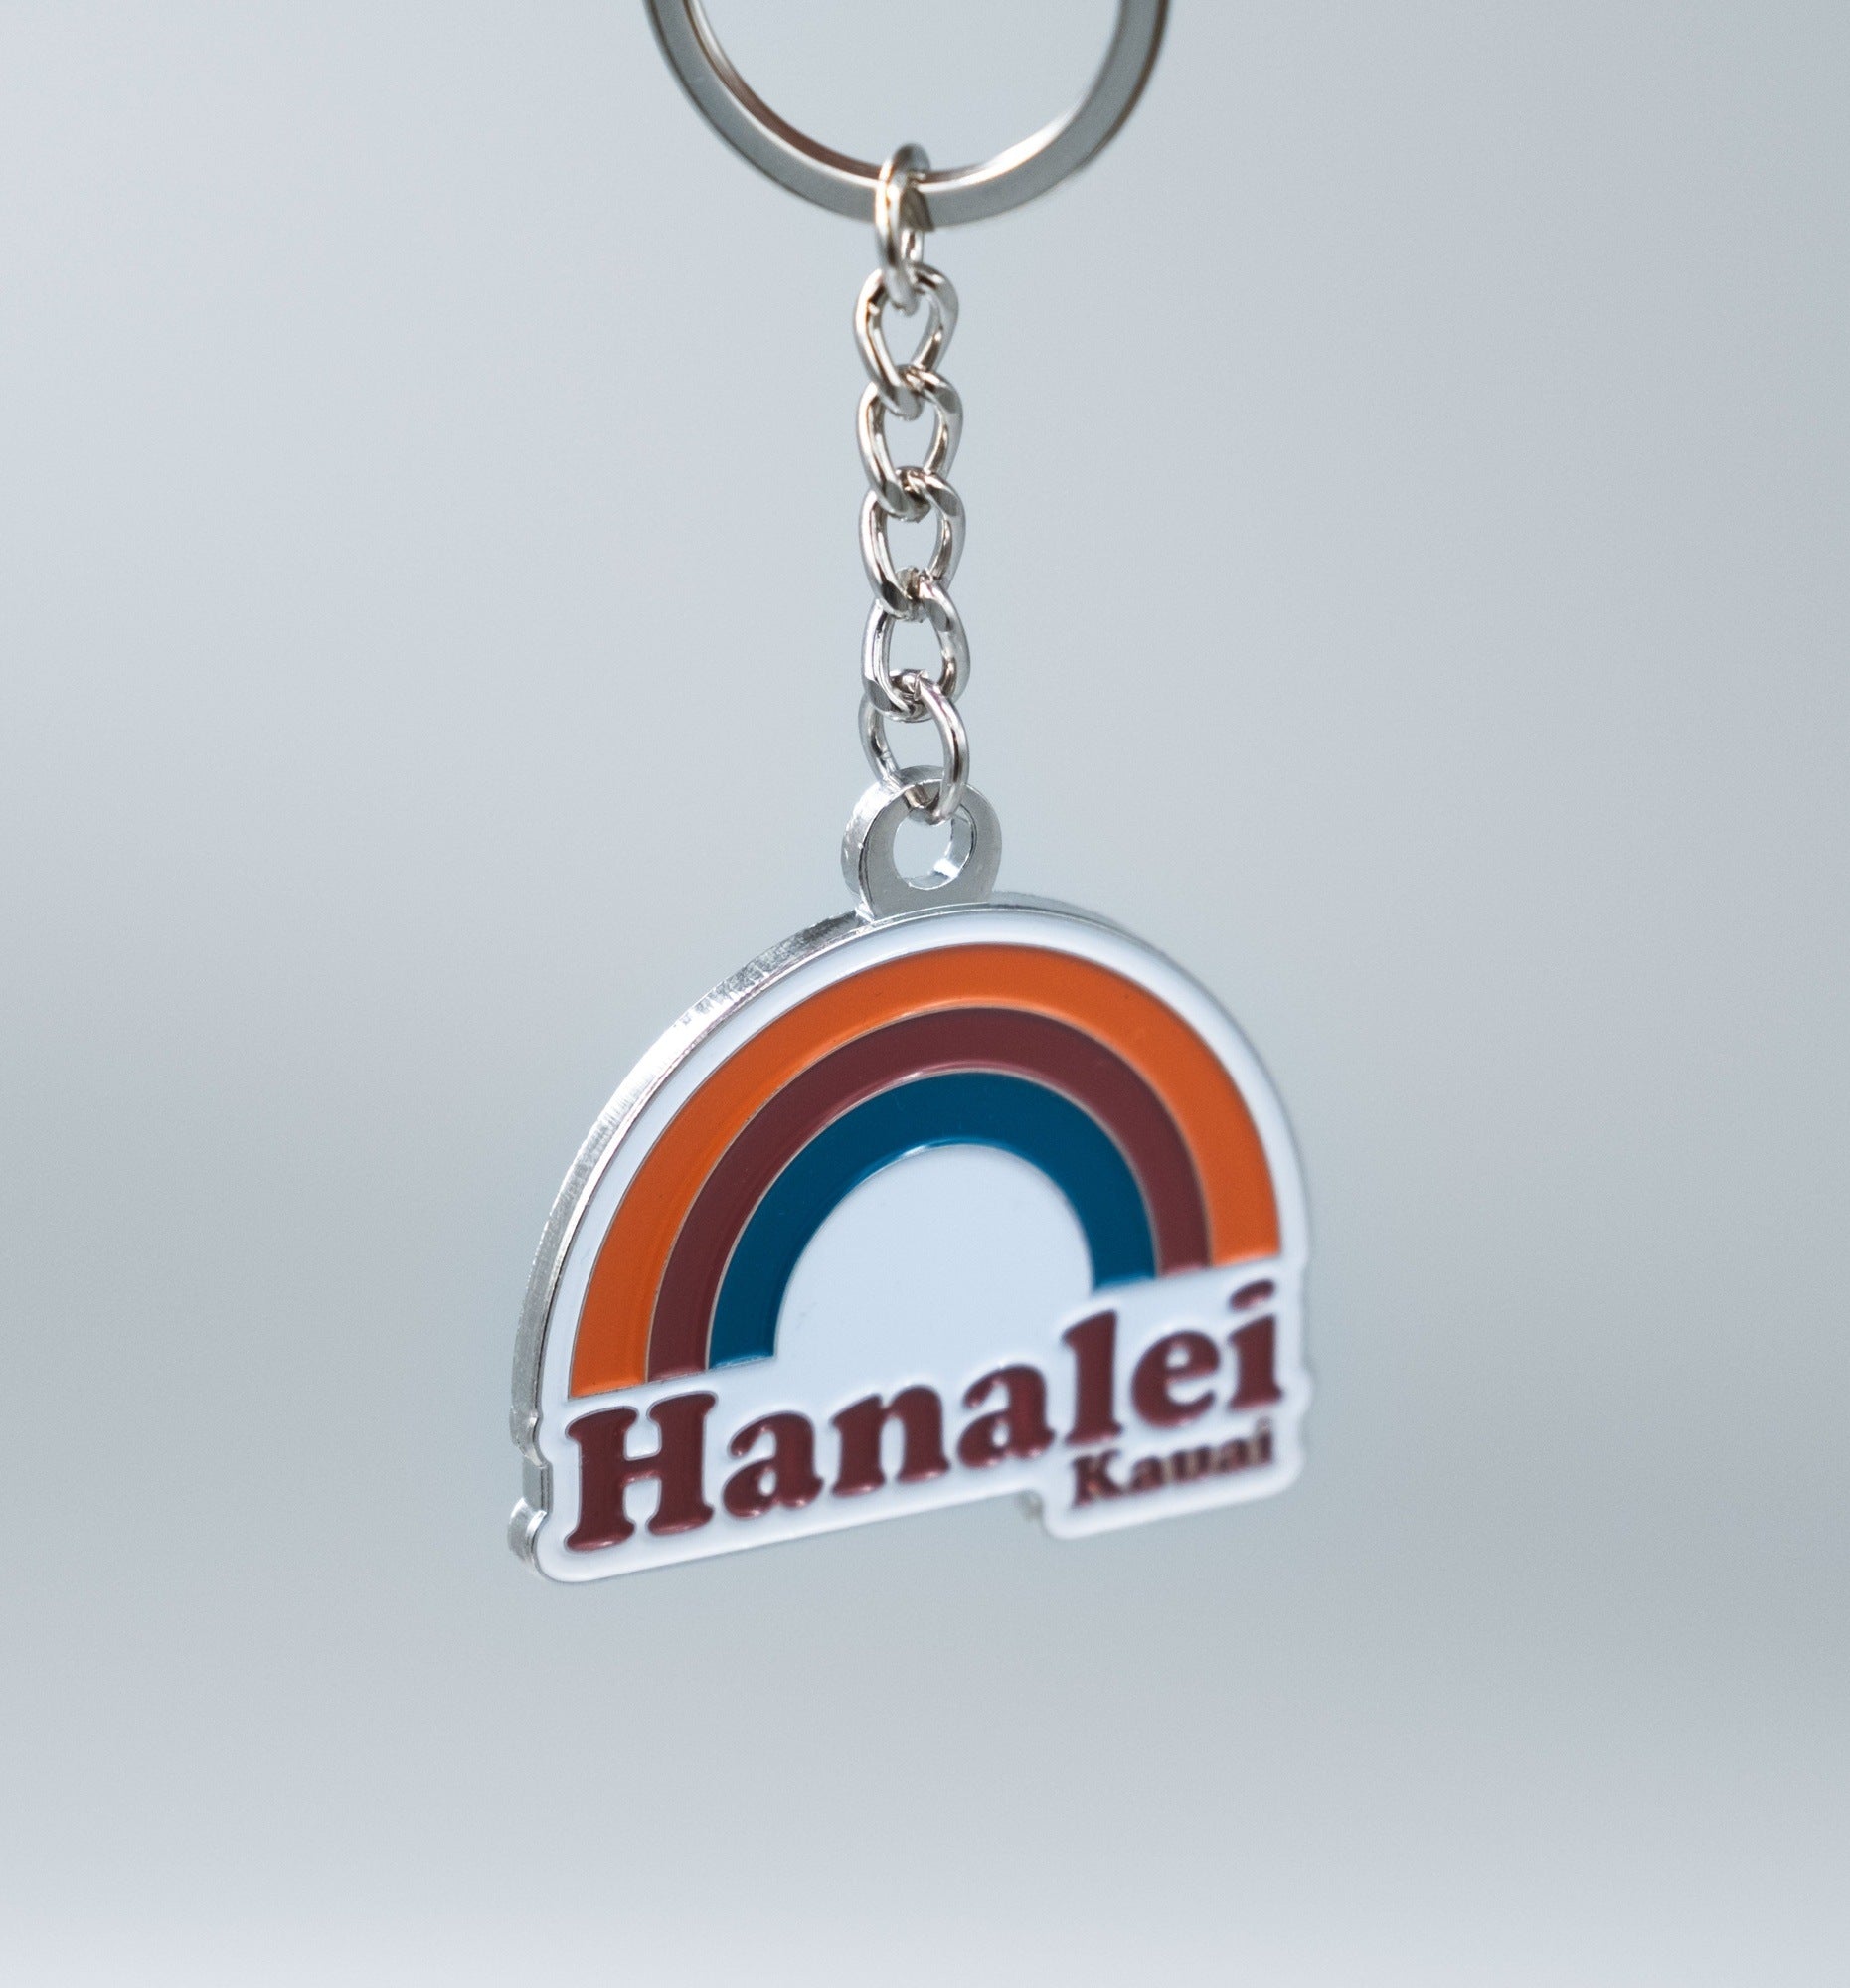 Hanalei Rainbow Keychain Keychains - Slow Yourself Down